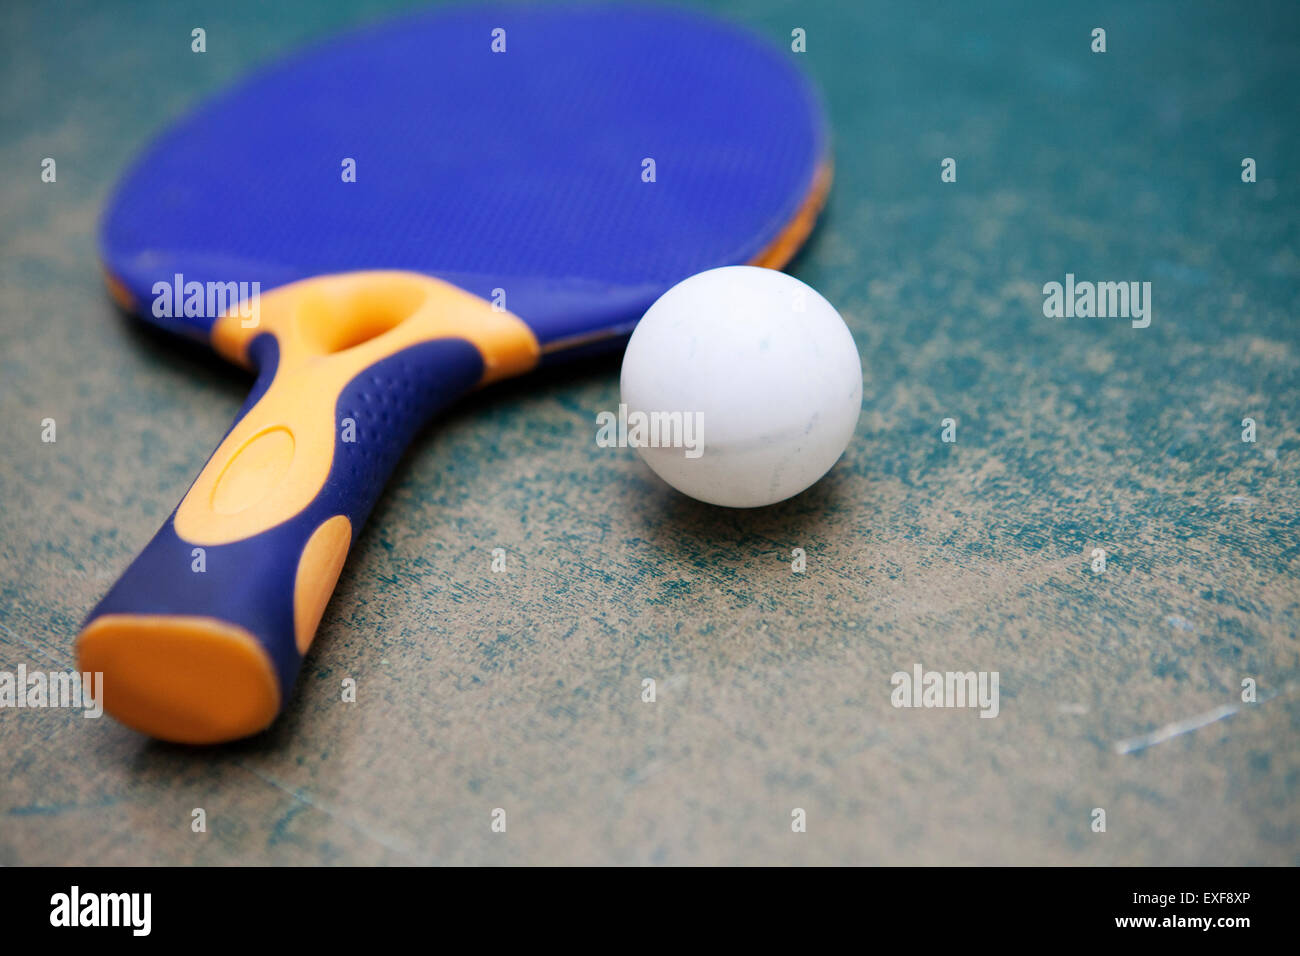 Pala de tenis de mesa y bola en mesa desgastada Foto de stock